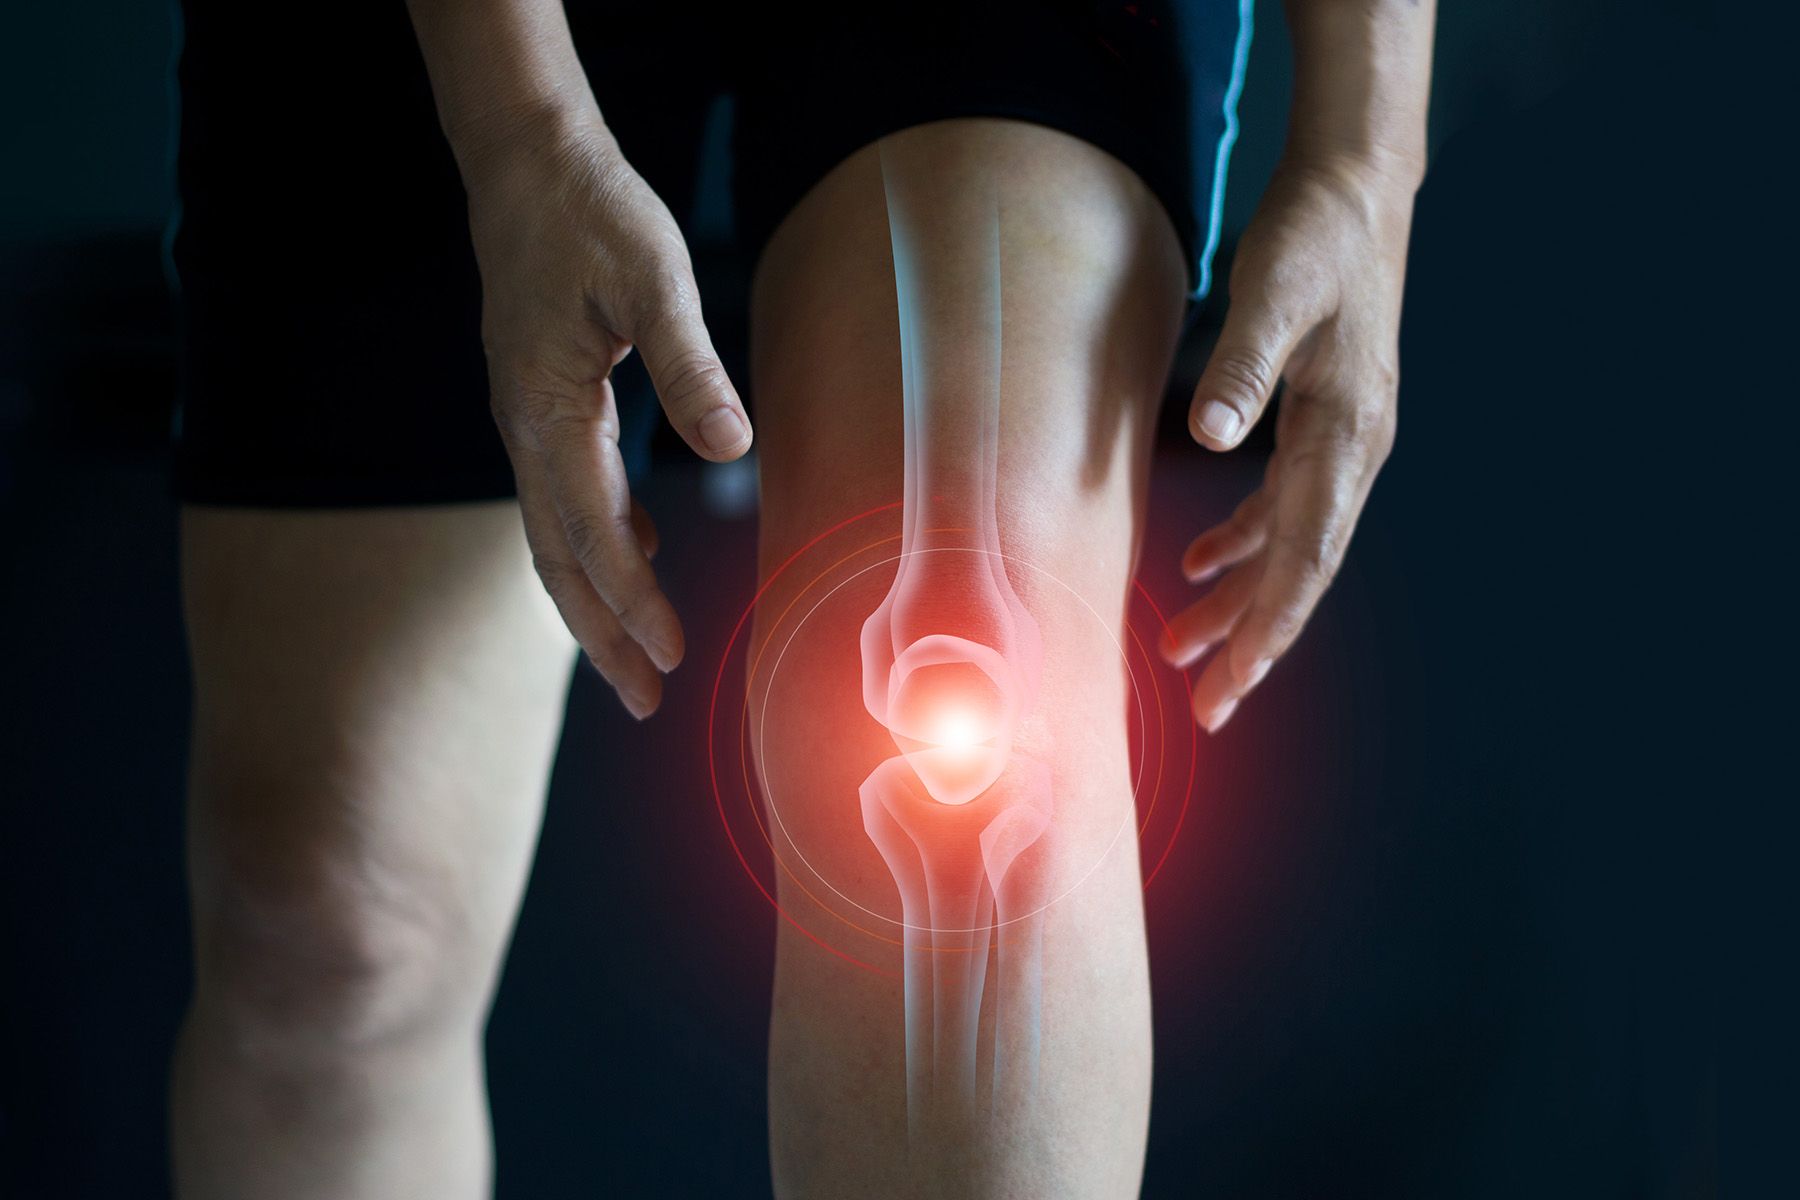 Noleggio strumenti medicali riabilitatore ginocchio kinetec MEDFAR SRL a Parma Vendita e assistenza strumenti e apparecchiature medicali